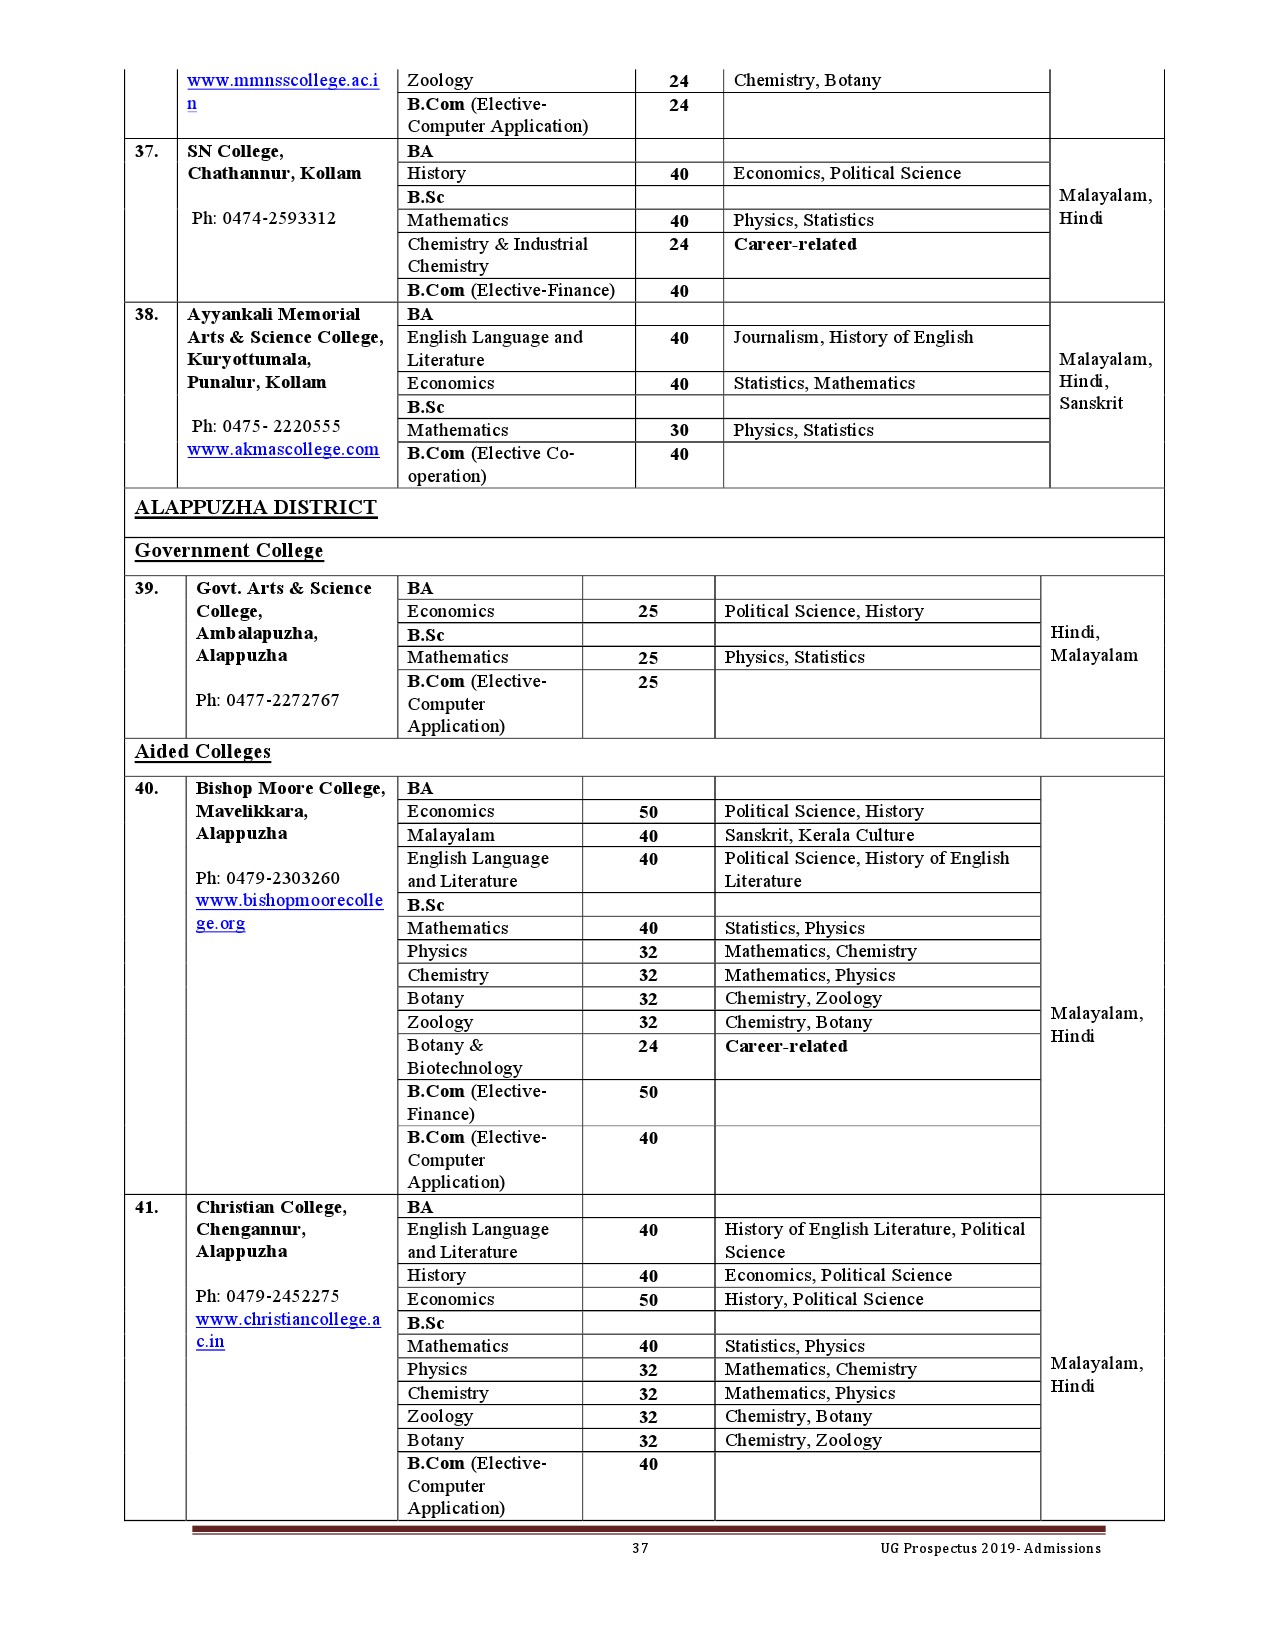 Kerala University UG Admission Prospectus 2019 - Notification Image 37